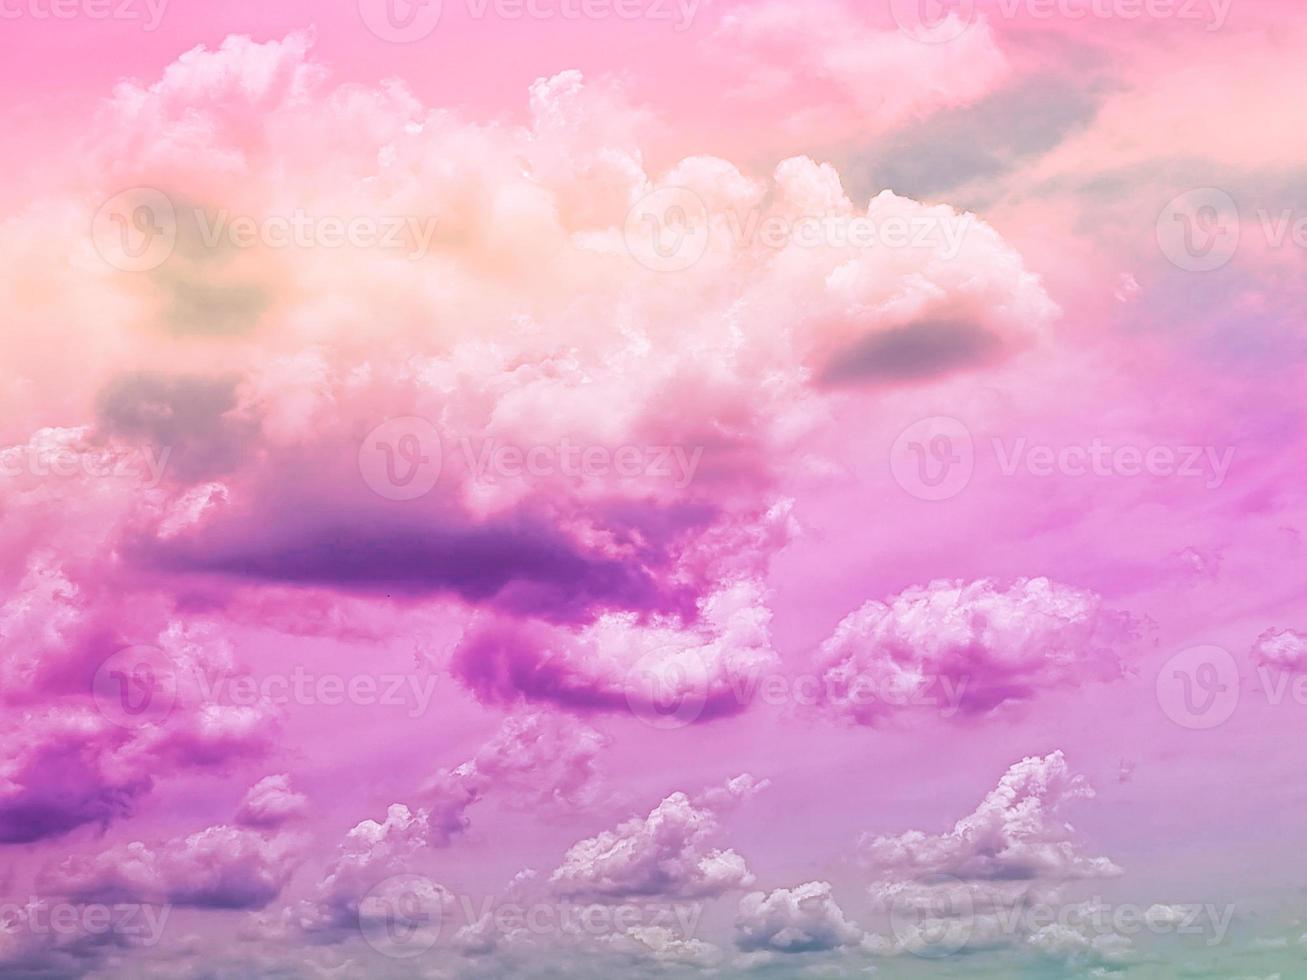 beauté douce pastel rose violet coloré avec des nuages moelleux sur le ciel. image arc-en-ciel multicolore. fantaisie abstraite lumière croissante photo